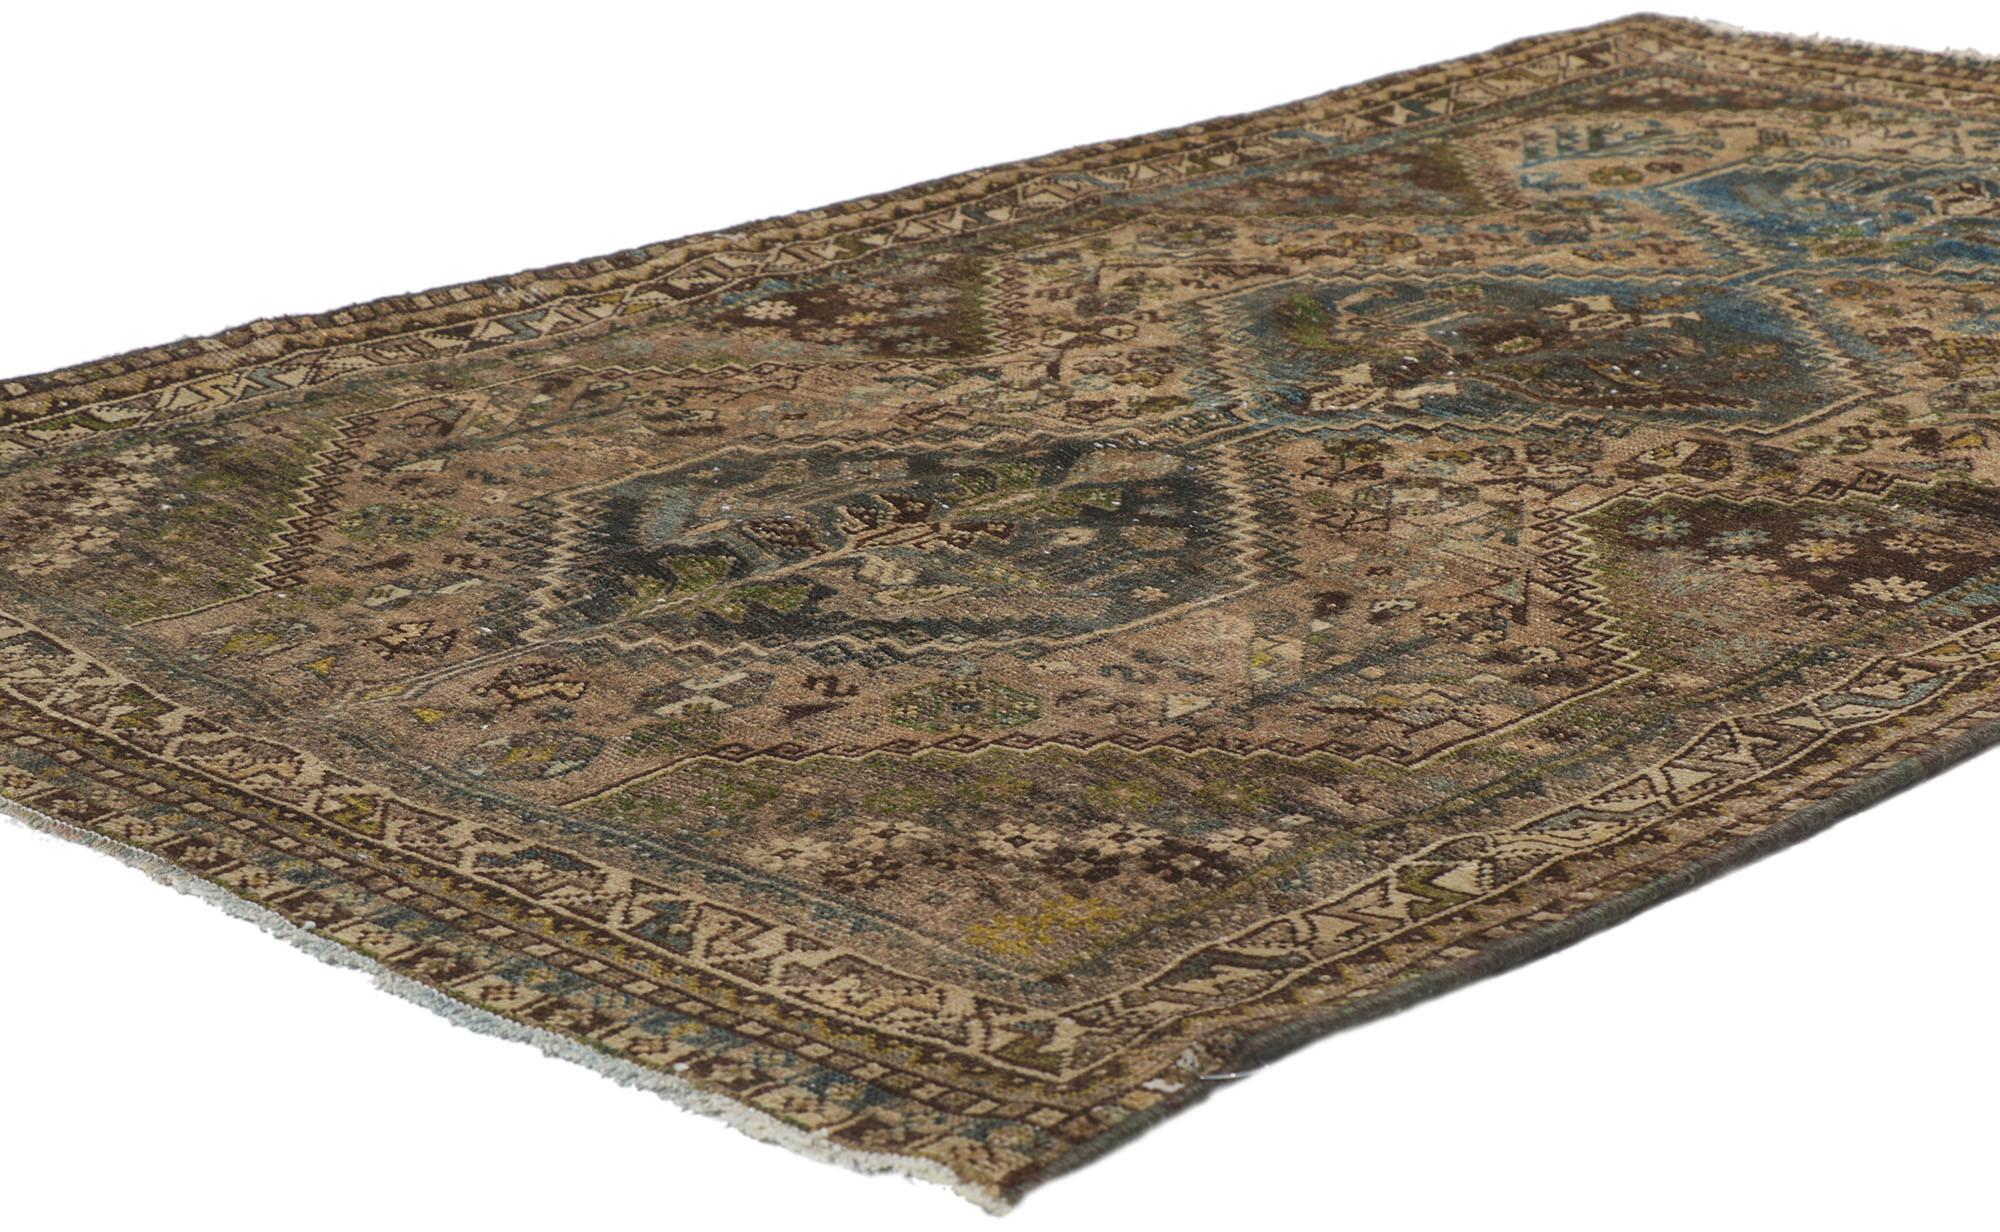 60995 Antiker persischer Hamadan-Teppich,  03'06 x 05'05.
Bereiten Sie sich darauf vor, mit diesem handgeknüpften antiken persischen Hamadan-Teppich aus Wolle, der wie ein magischer Teppich aussieht, in ein mystisches Reich voller fesselnder Wunder